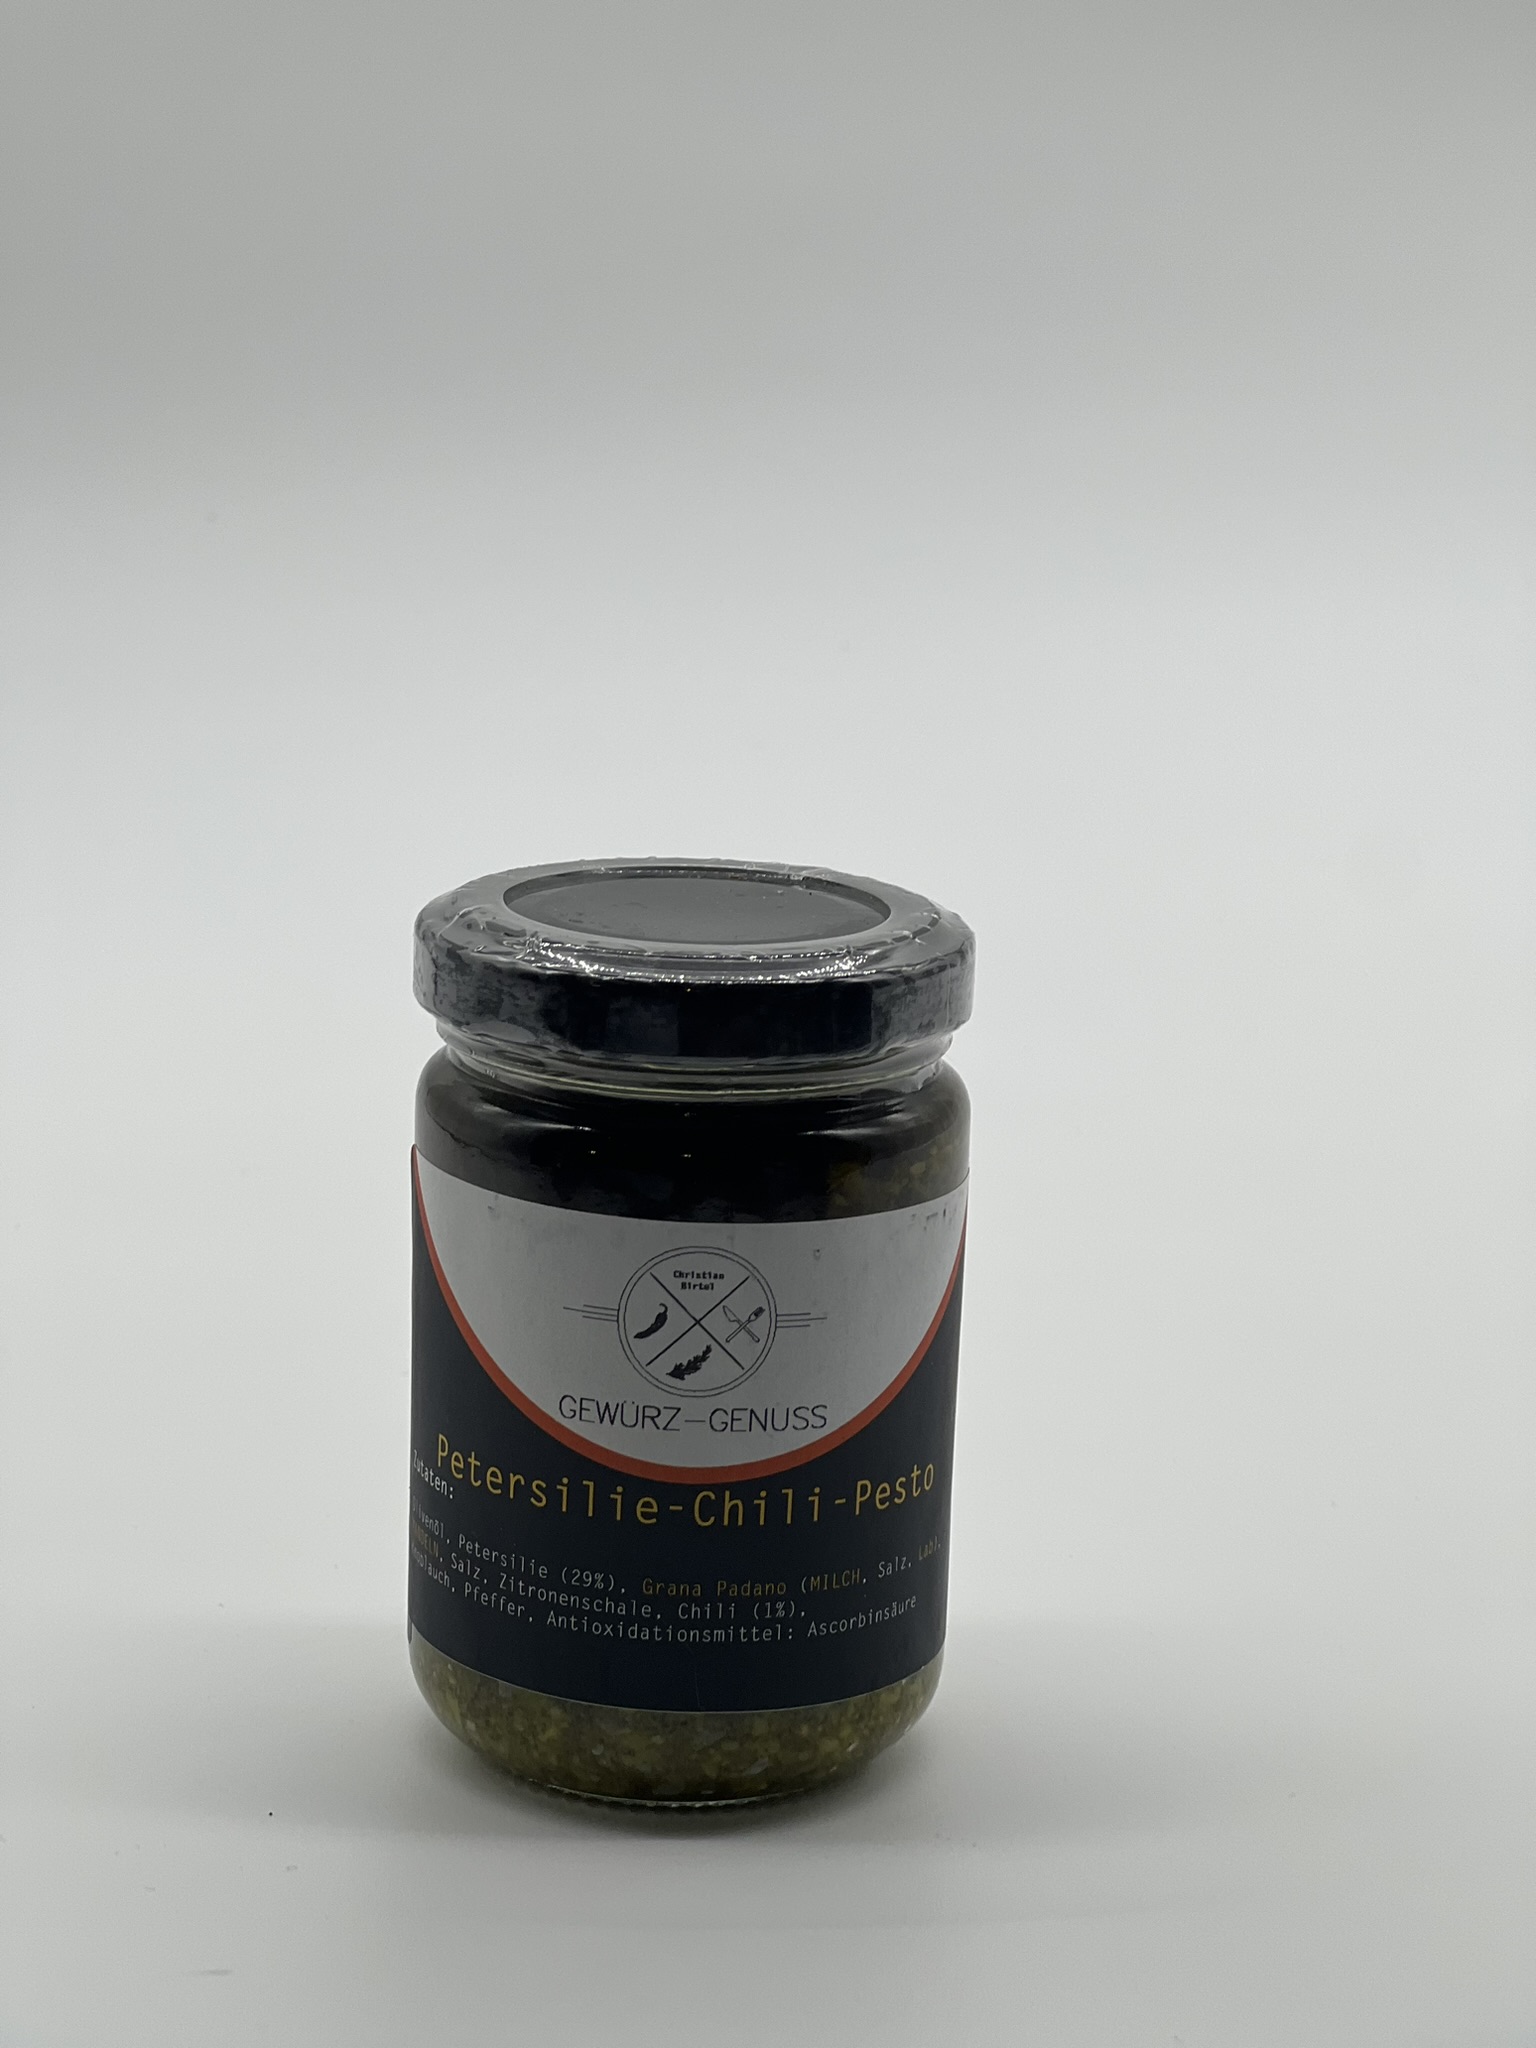 Petersilie-Chili-Pesto